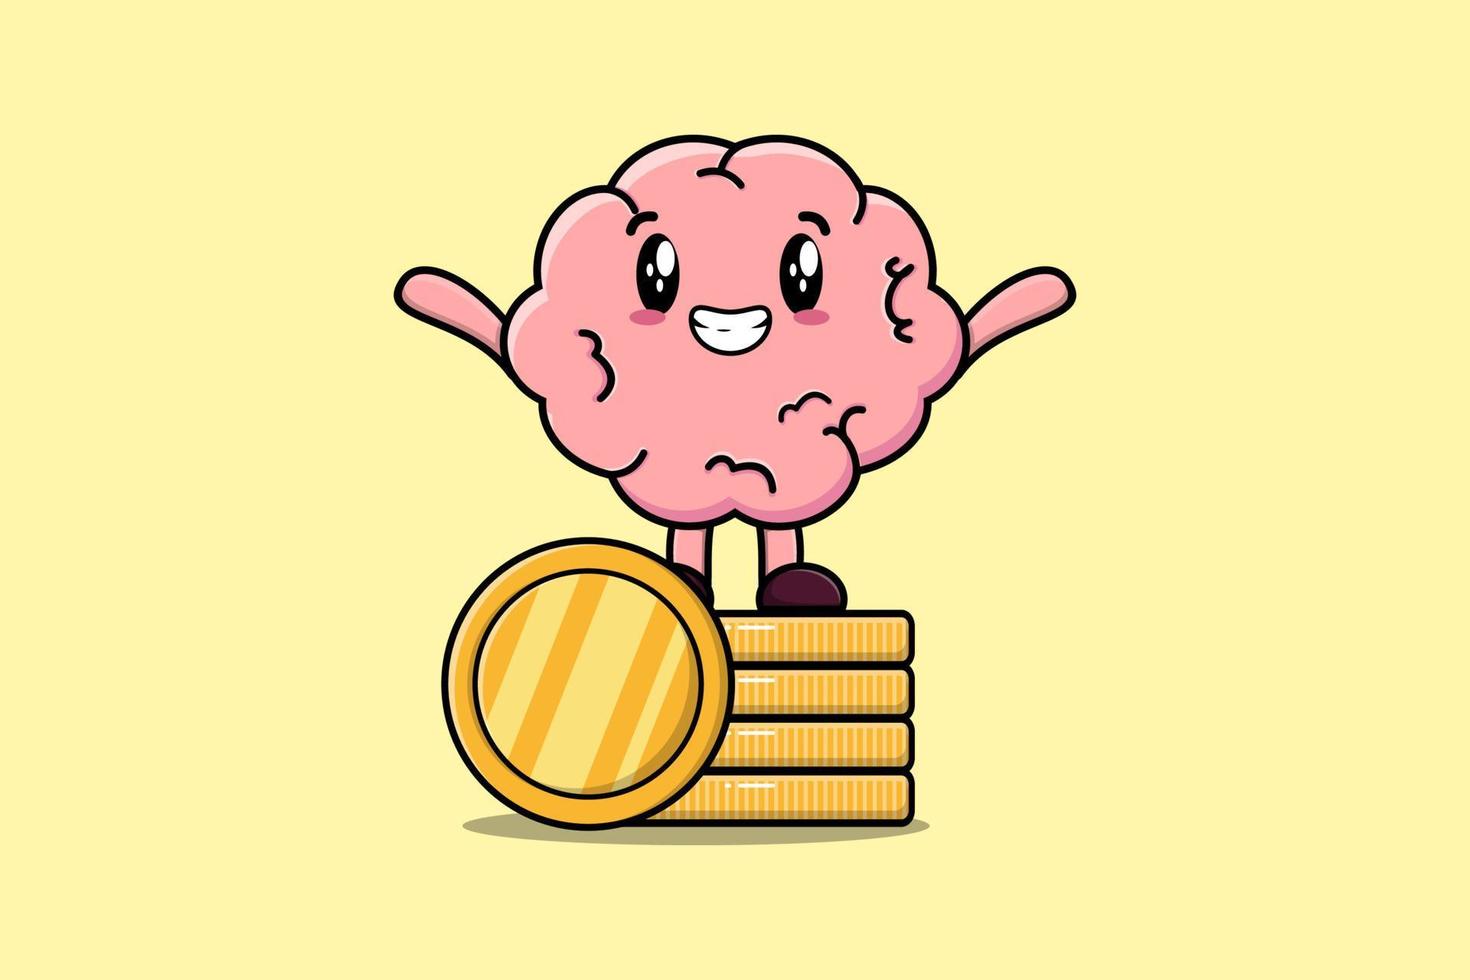 cérebro bonito dos desenhos animados em pé na moeda de ouro empilhada vetor